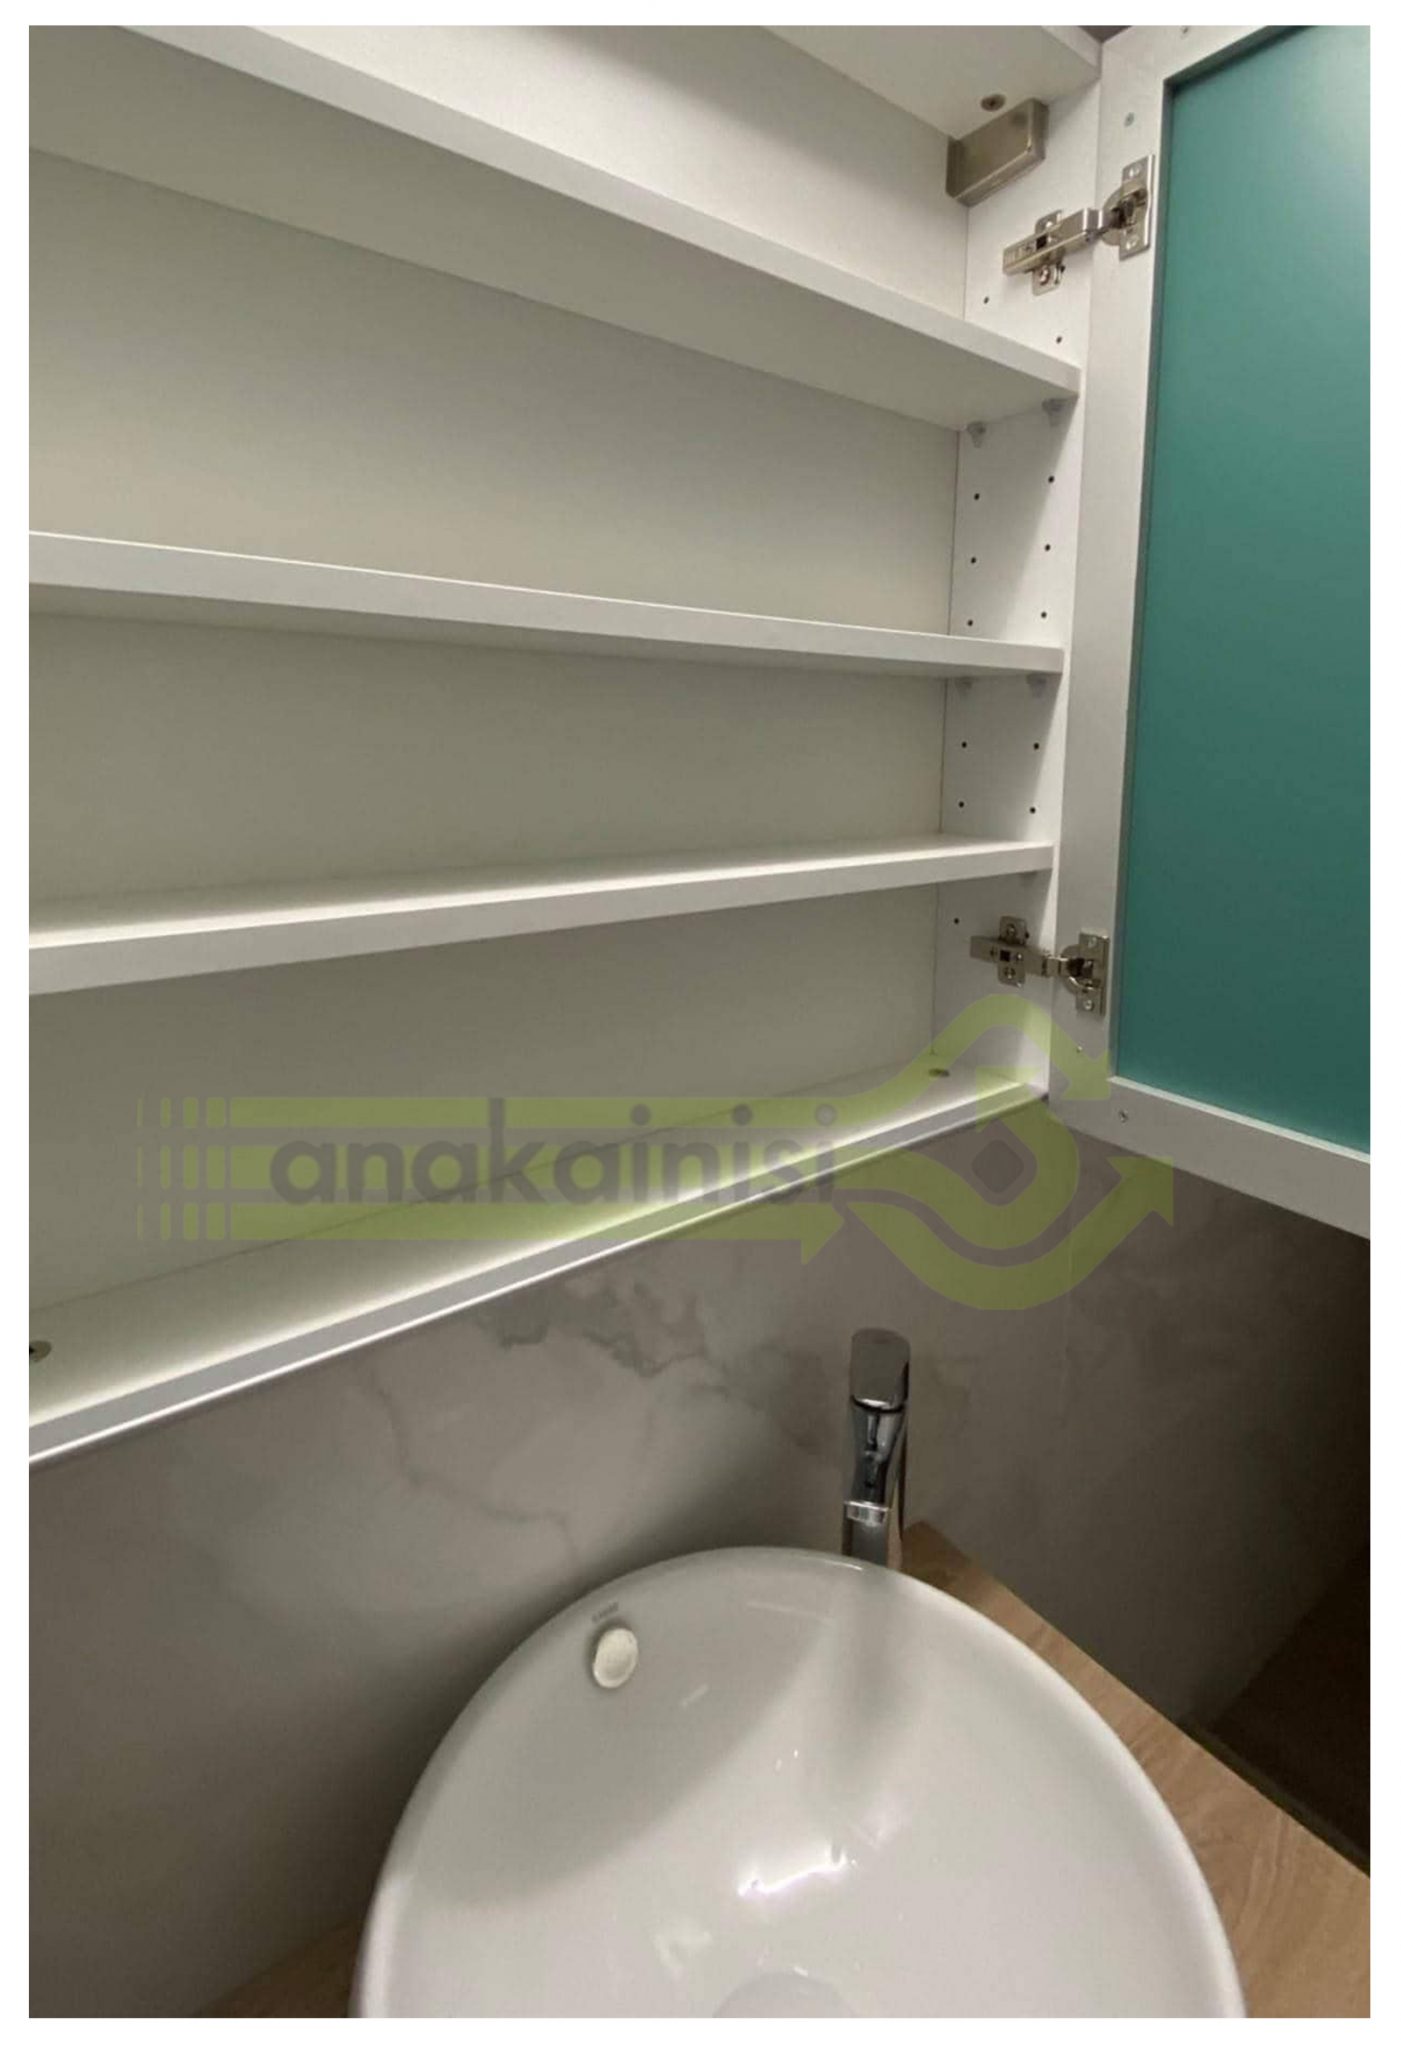 Ανακαίνιση Σπιτιού Πατήσια Μπάνιο Καθρέφτης Μπάνιου και Εσωτερικά Ντουλαπια Κρυμένα στον Καθρέφτη 